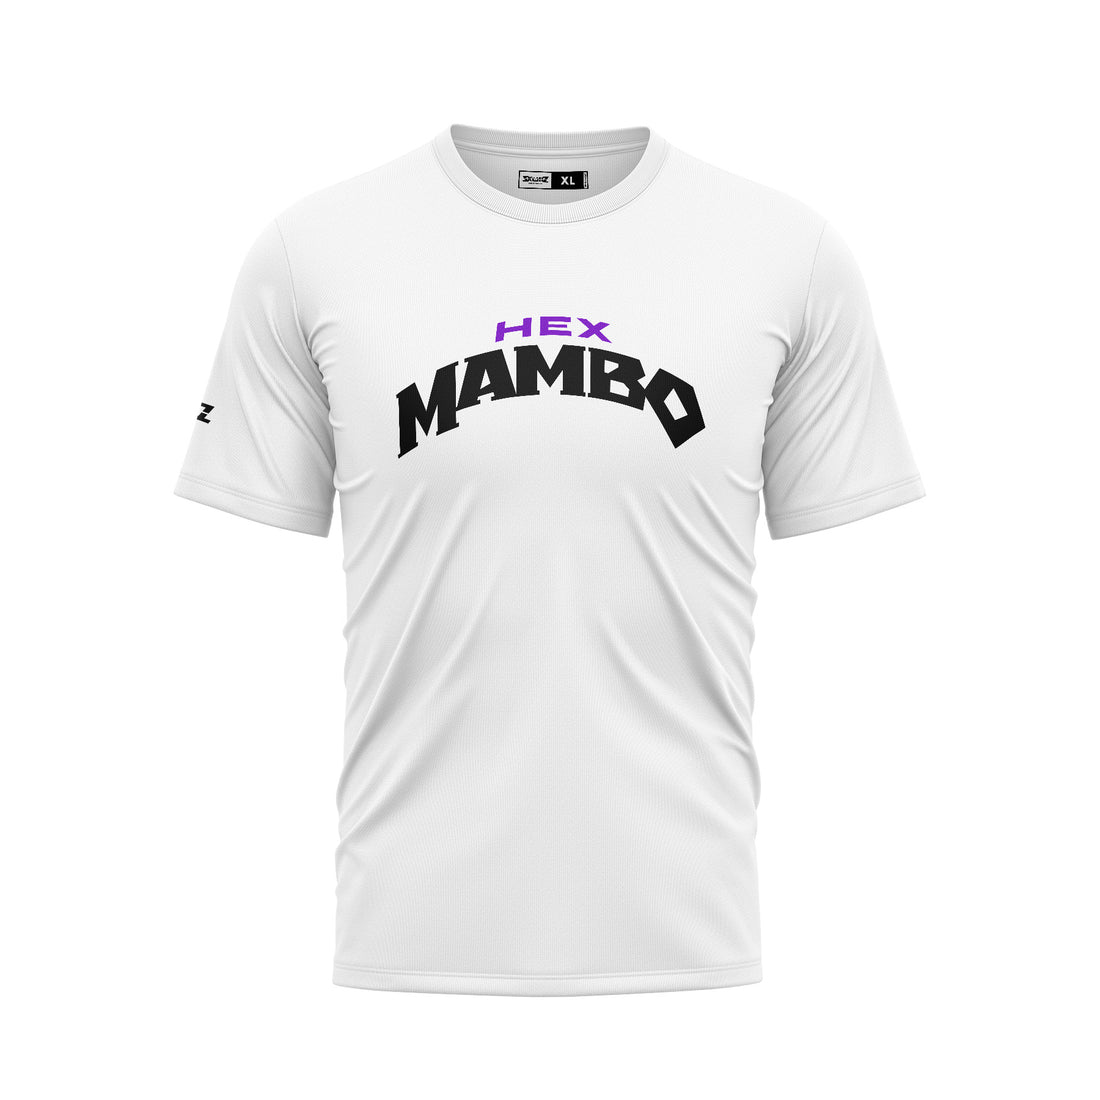 Hex Mambo SCC Logo Shirt